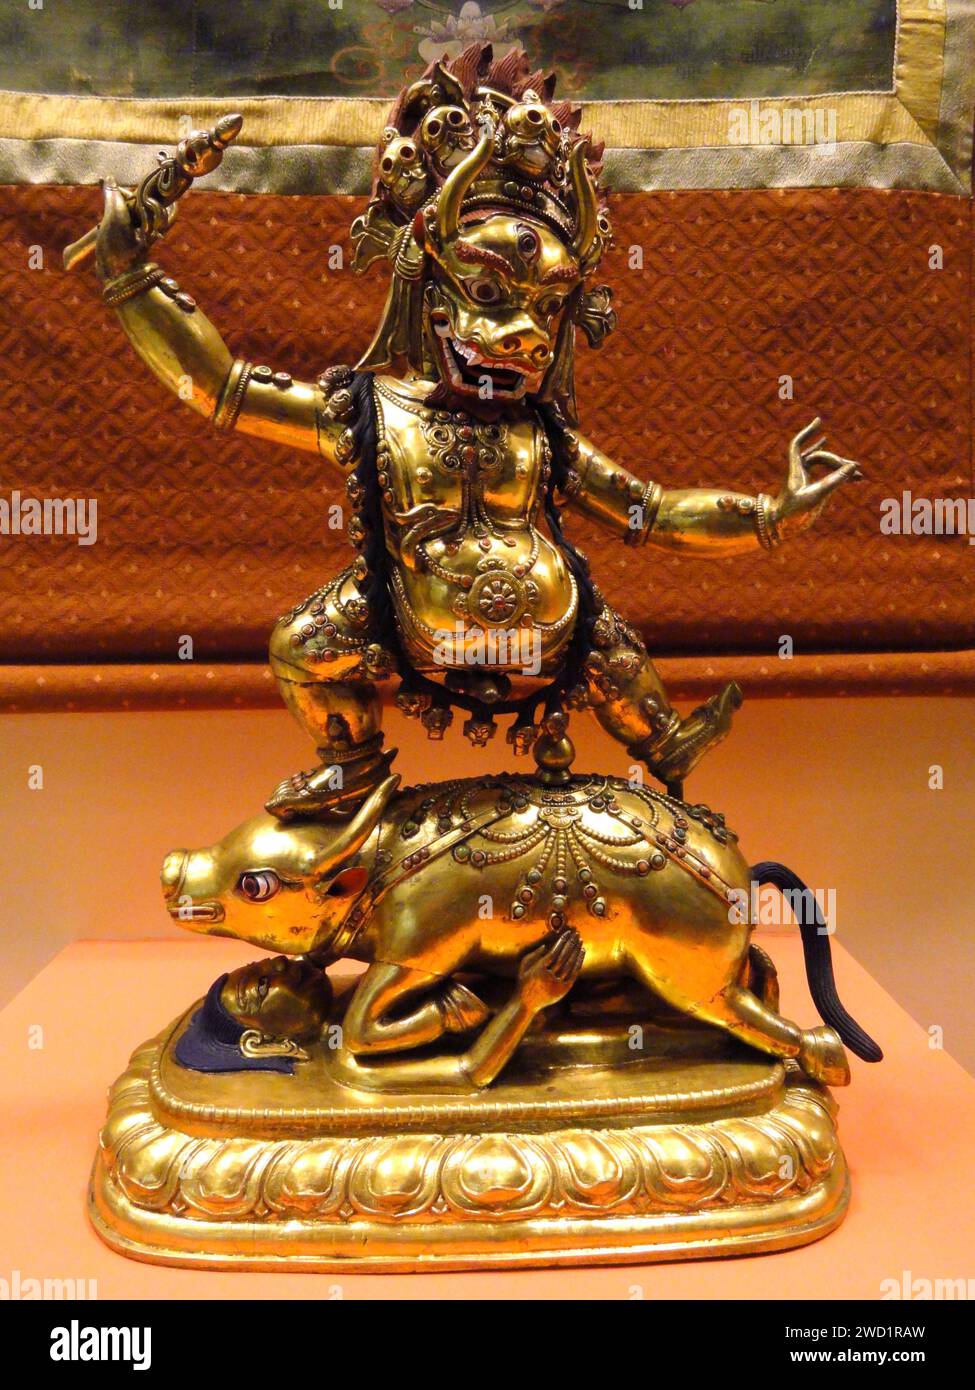 Tibet: Statue von Yama, dem König der Hölle. American Museum of Natural History, New York. Foto von Daderot. In der ostasiatischen Mythologie ist Yama ein dharmapala (zornvoller Gott) und König der Hölle. Es ist seine Pflicht, die Toten zu verurteilen und über die verschiedenen Hüllen und Fegefeuer zu herrschen, wobei er dem Zyklus der Samsara (zyklischer, kreisförmiger Wandel) vorsteht. Yama hat sich von der Hindu-Gottheit zu Rollen im Buddhismus sowie in der chinesischen, koreanischen und japanischen Mythologie entwickelt. Stockfoto